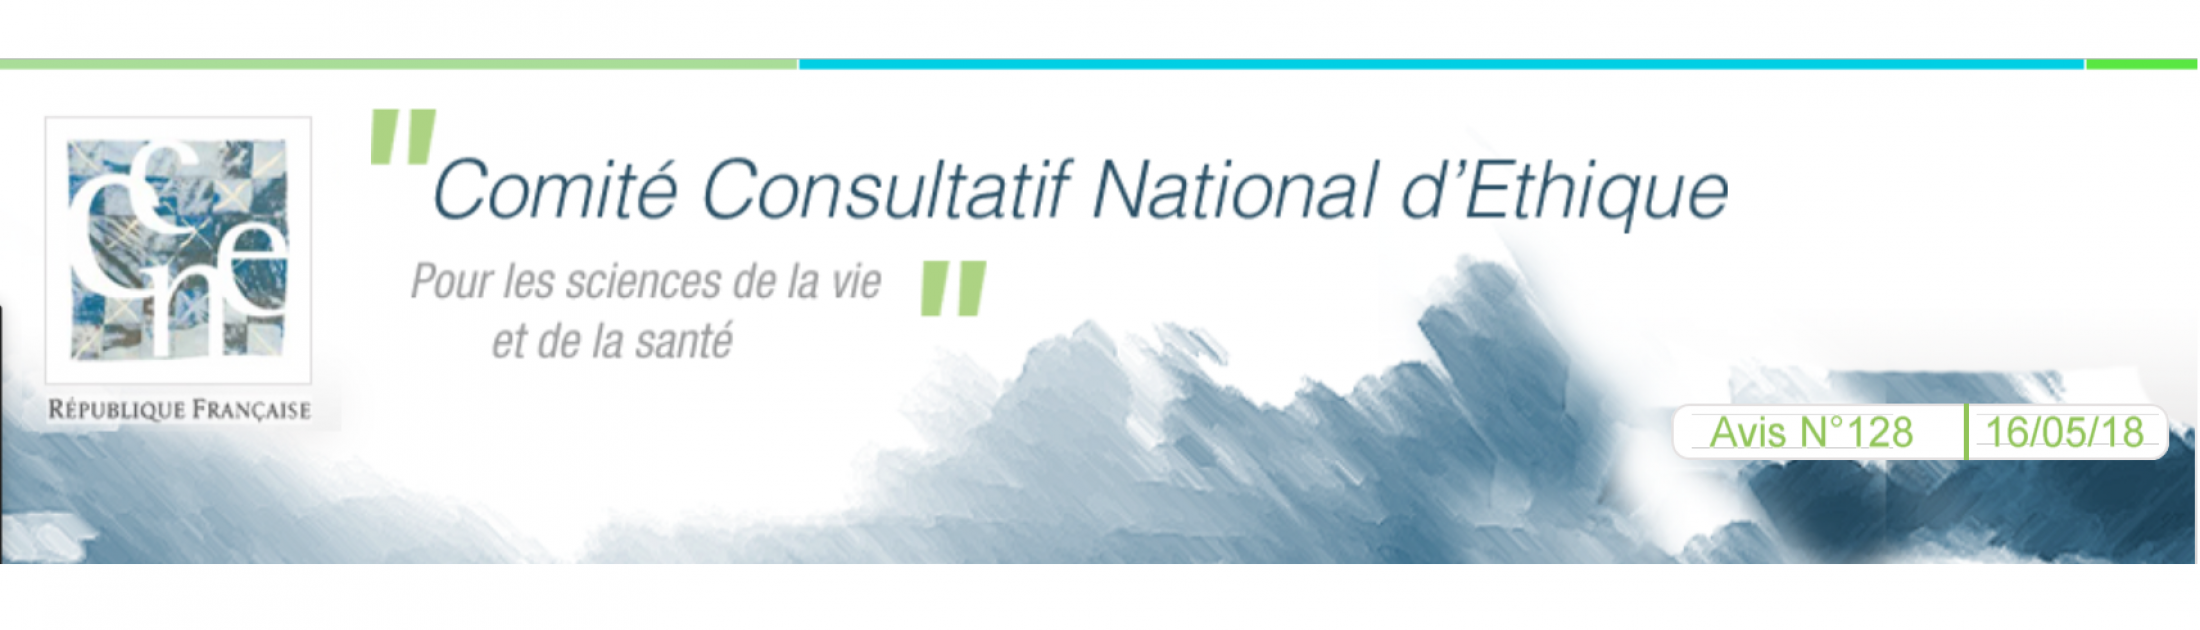 AVIS N° 128 Comité Consultatif national d’Ethique